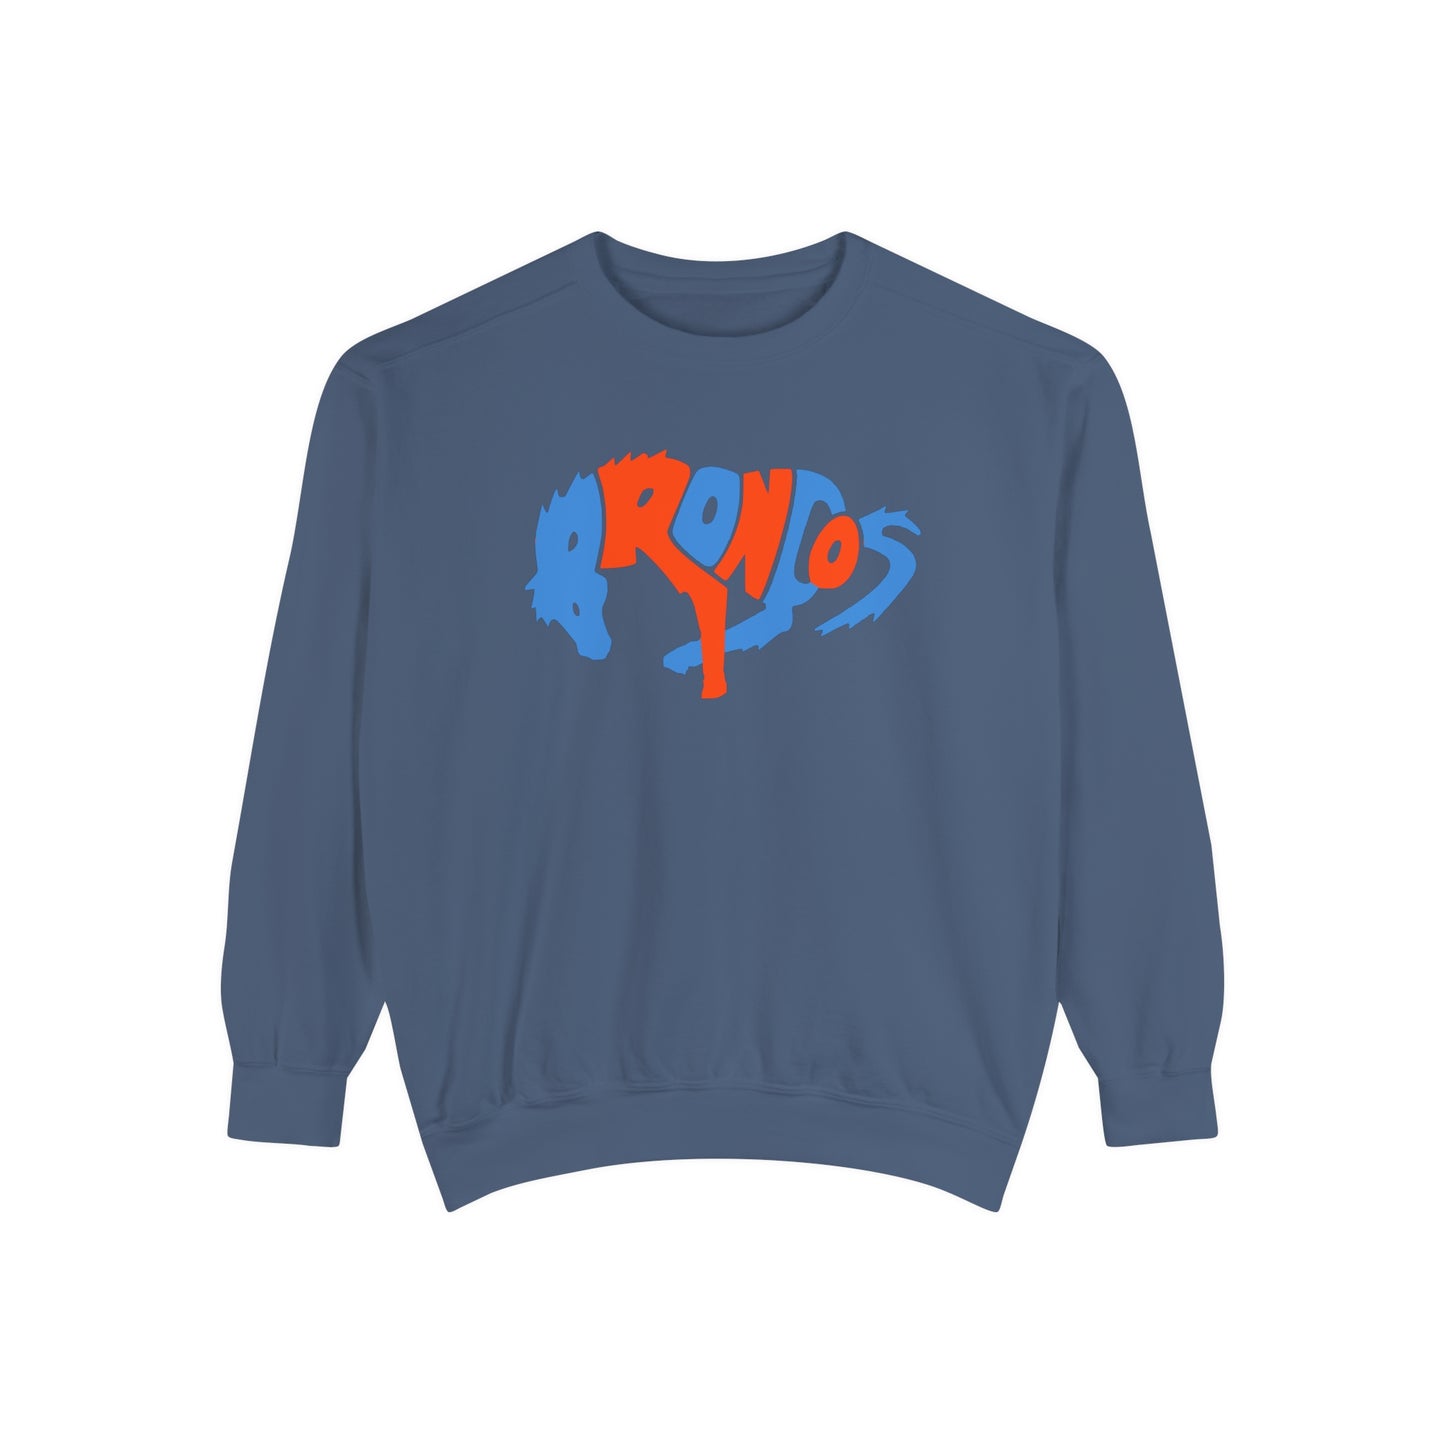 Comfort Colors Denver Broncos Crewneck Sweatshirt - Vintage Colorado Football Men's & Women's - Design 3